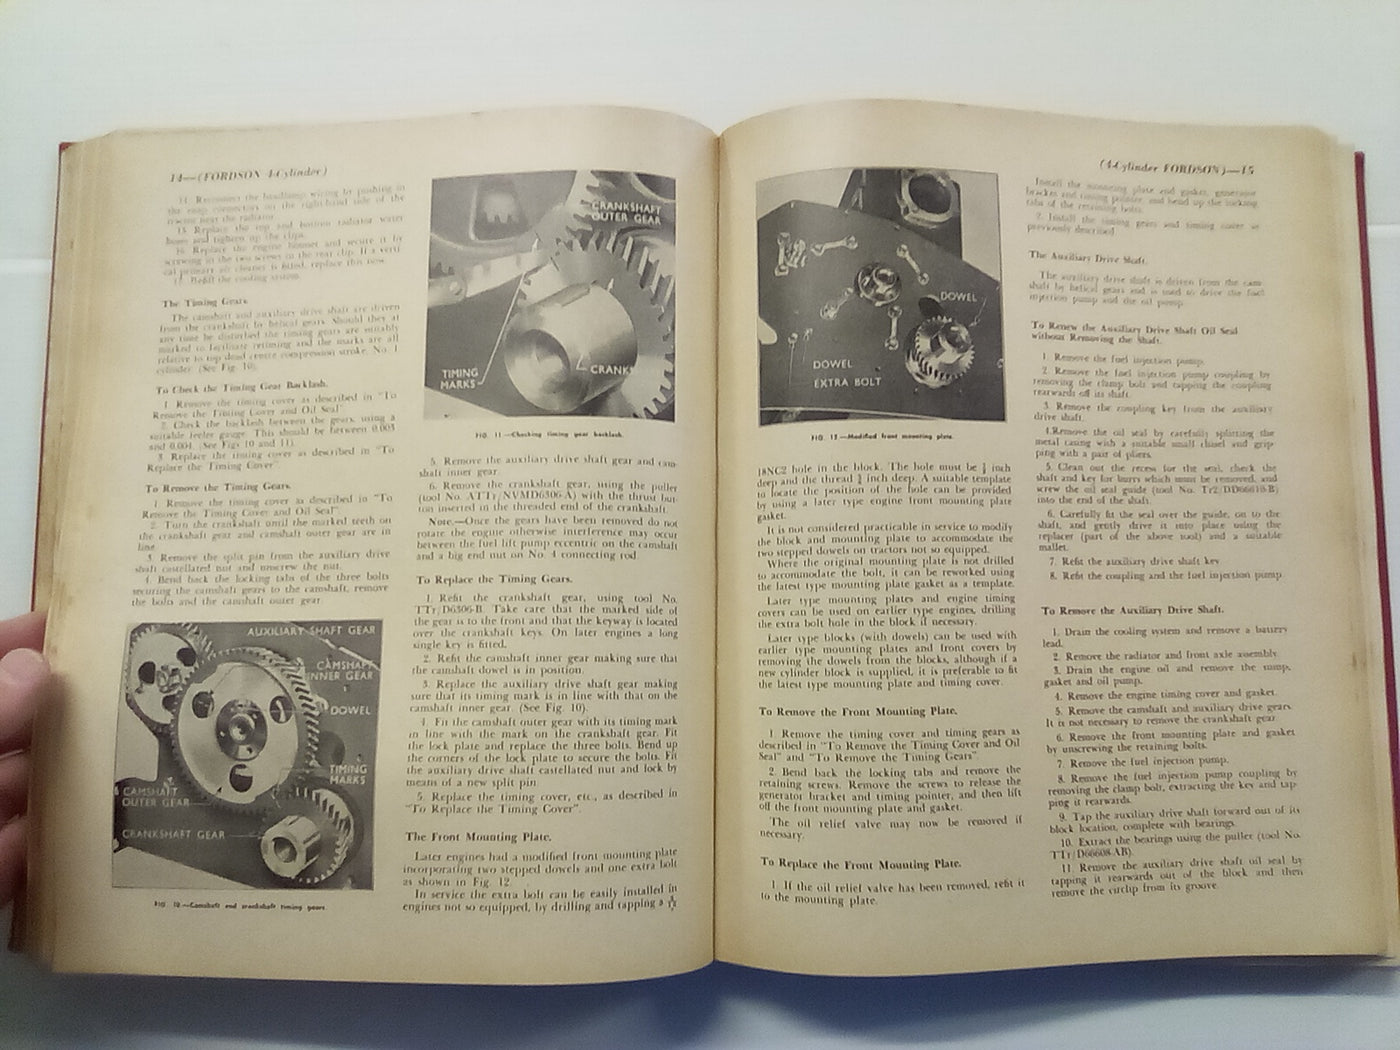 Diesel Engine Service Manual 1957 - Various Engines